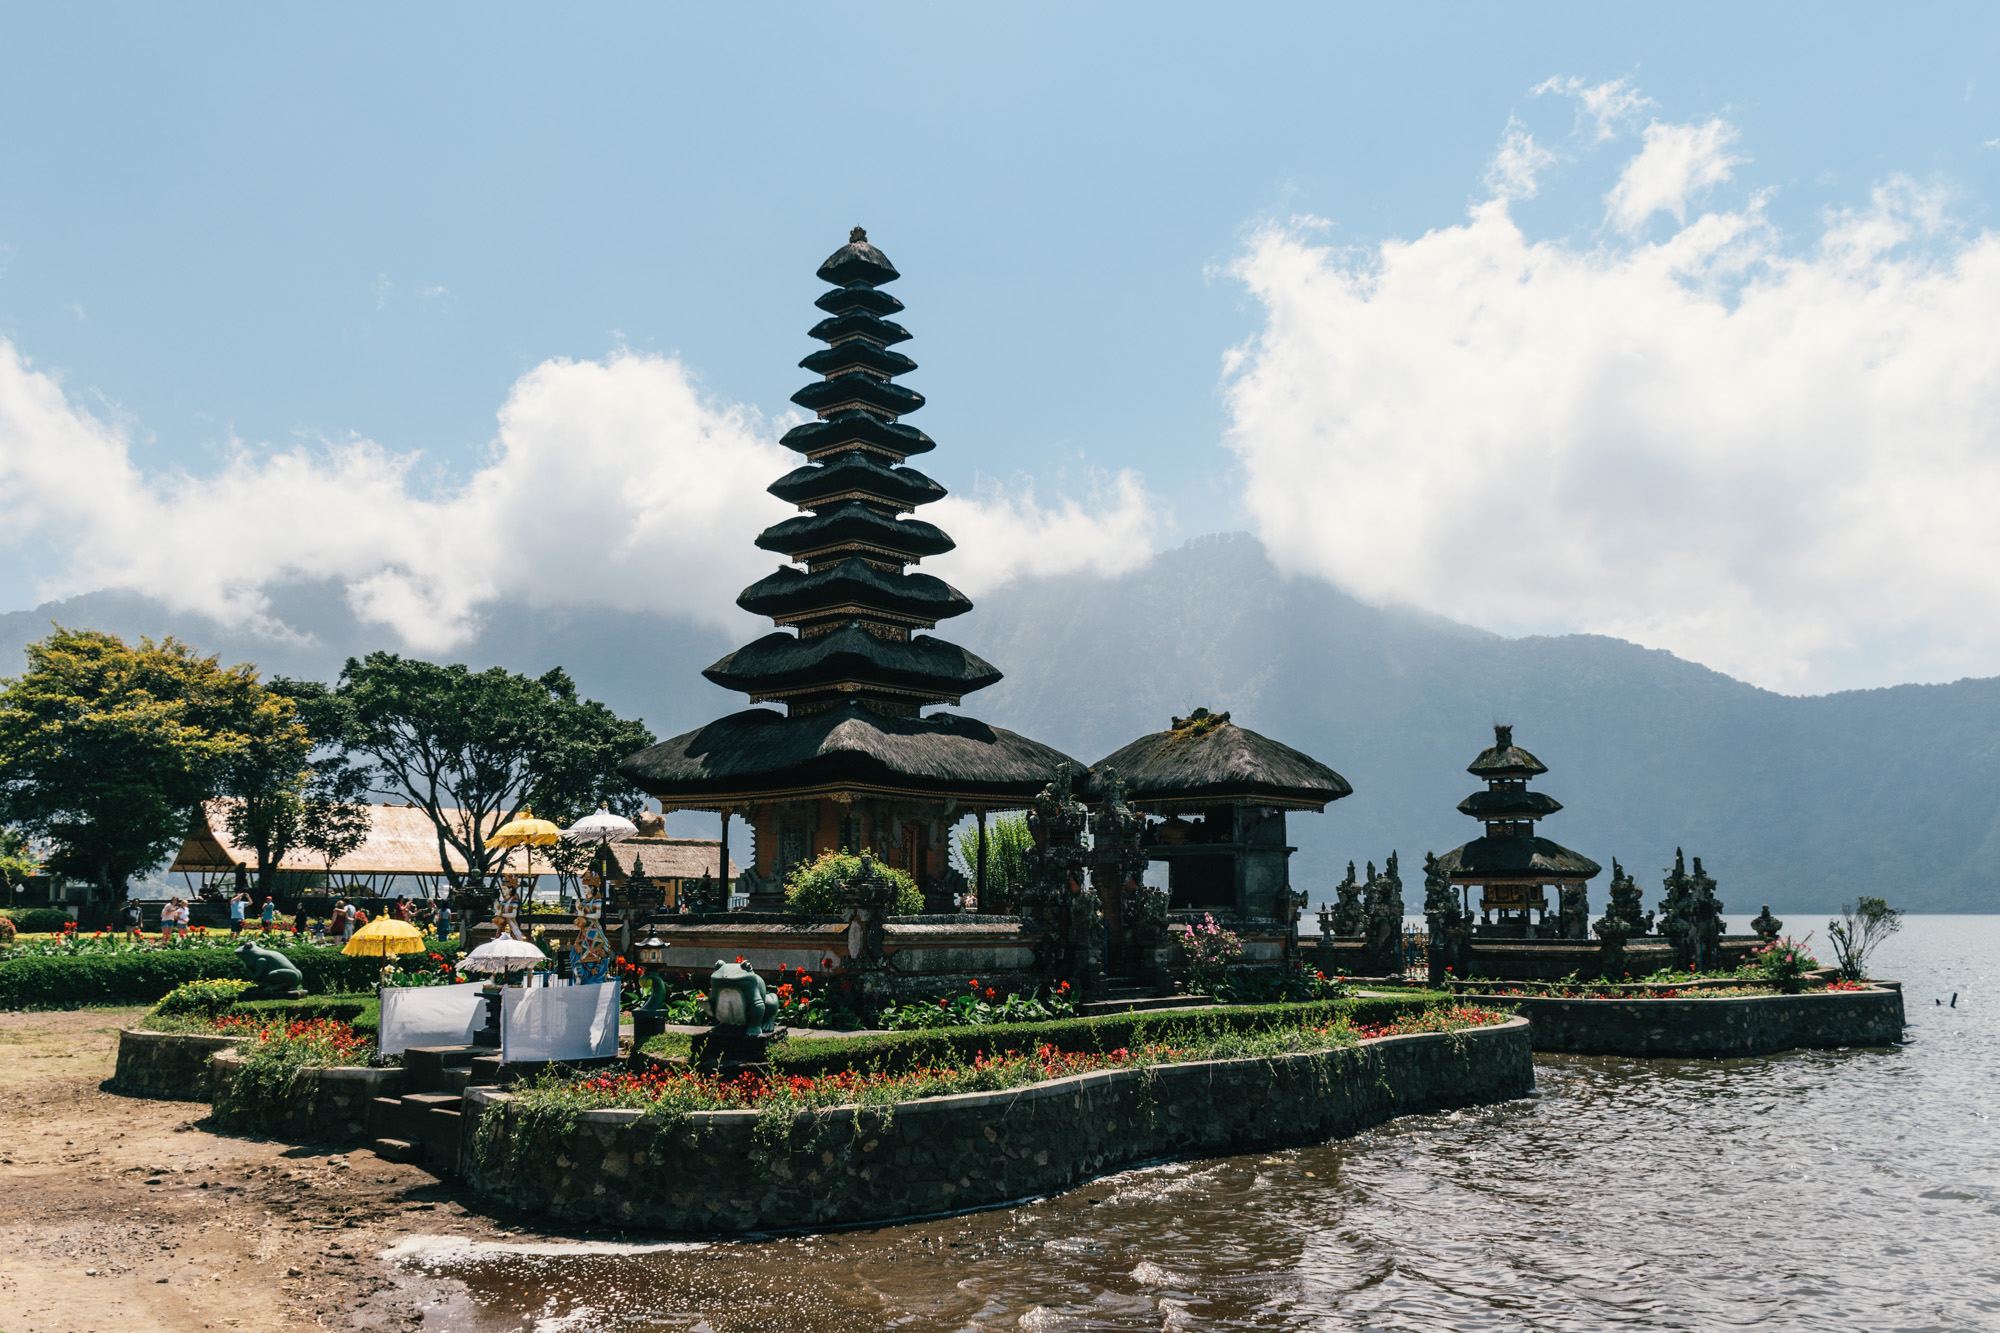 10 Days Bali Itinerary